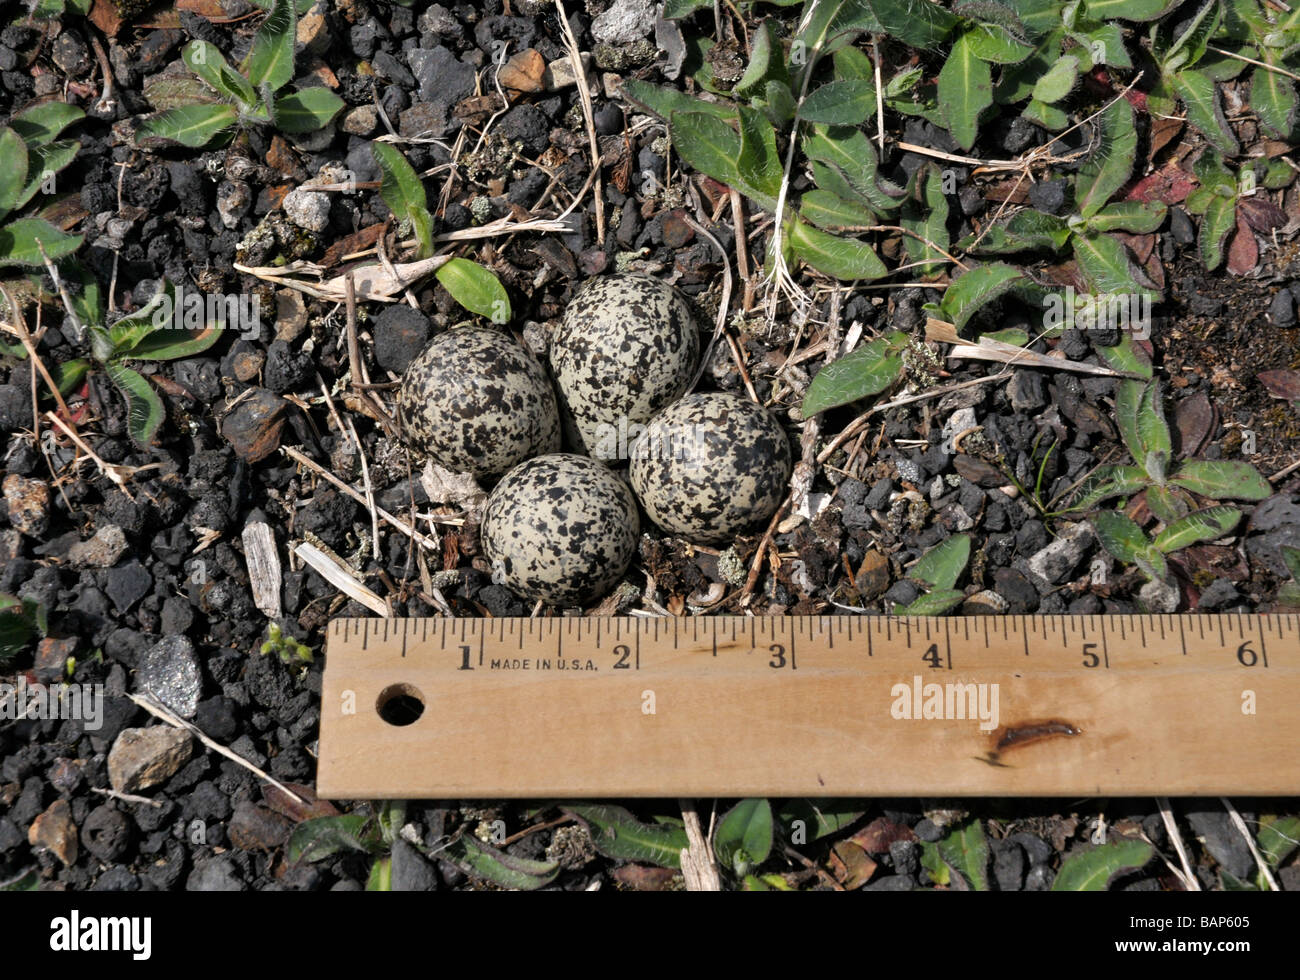 Killdeer nest with four eggs. Stock Photo